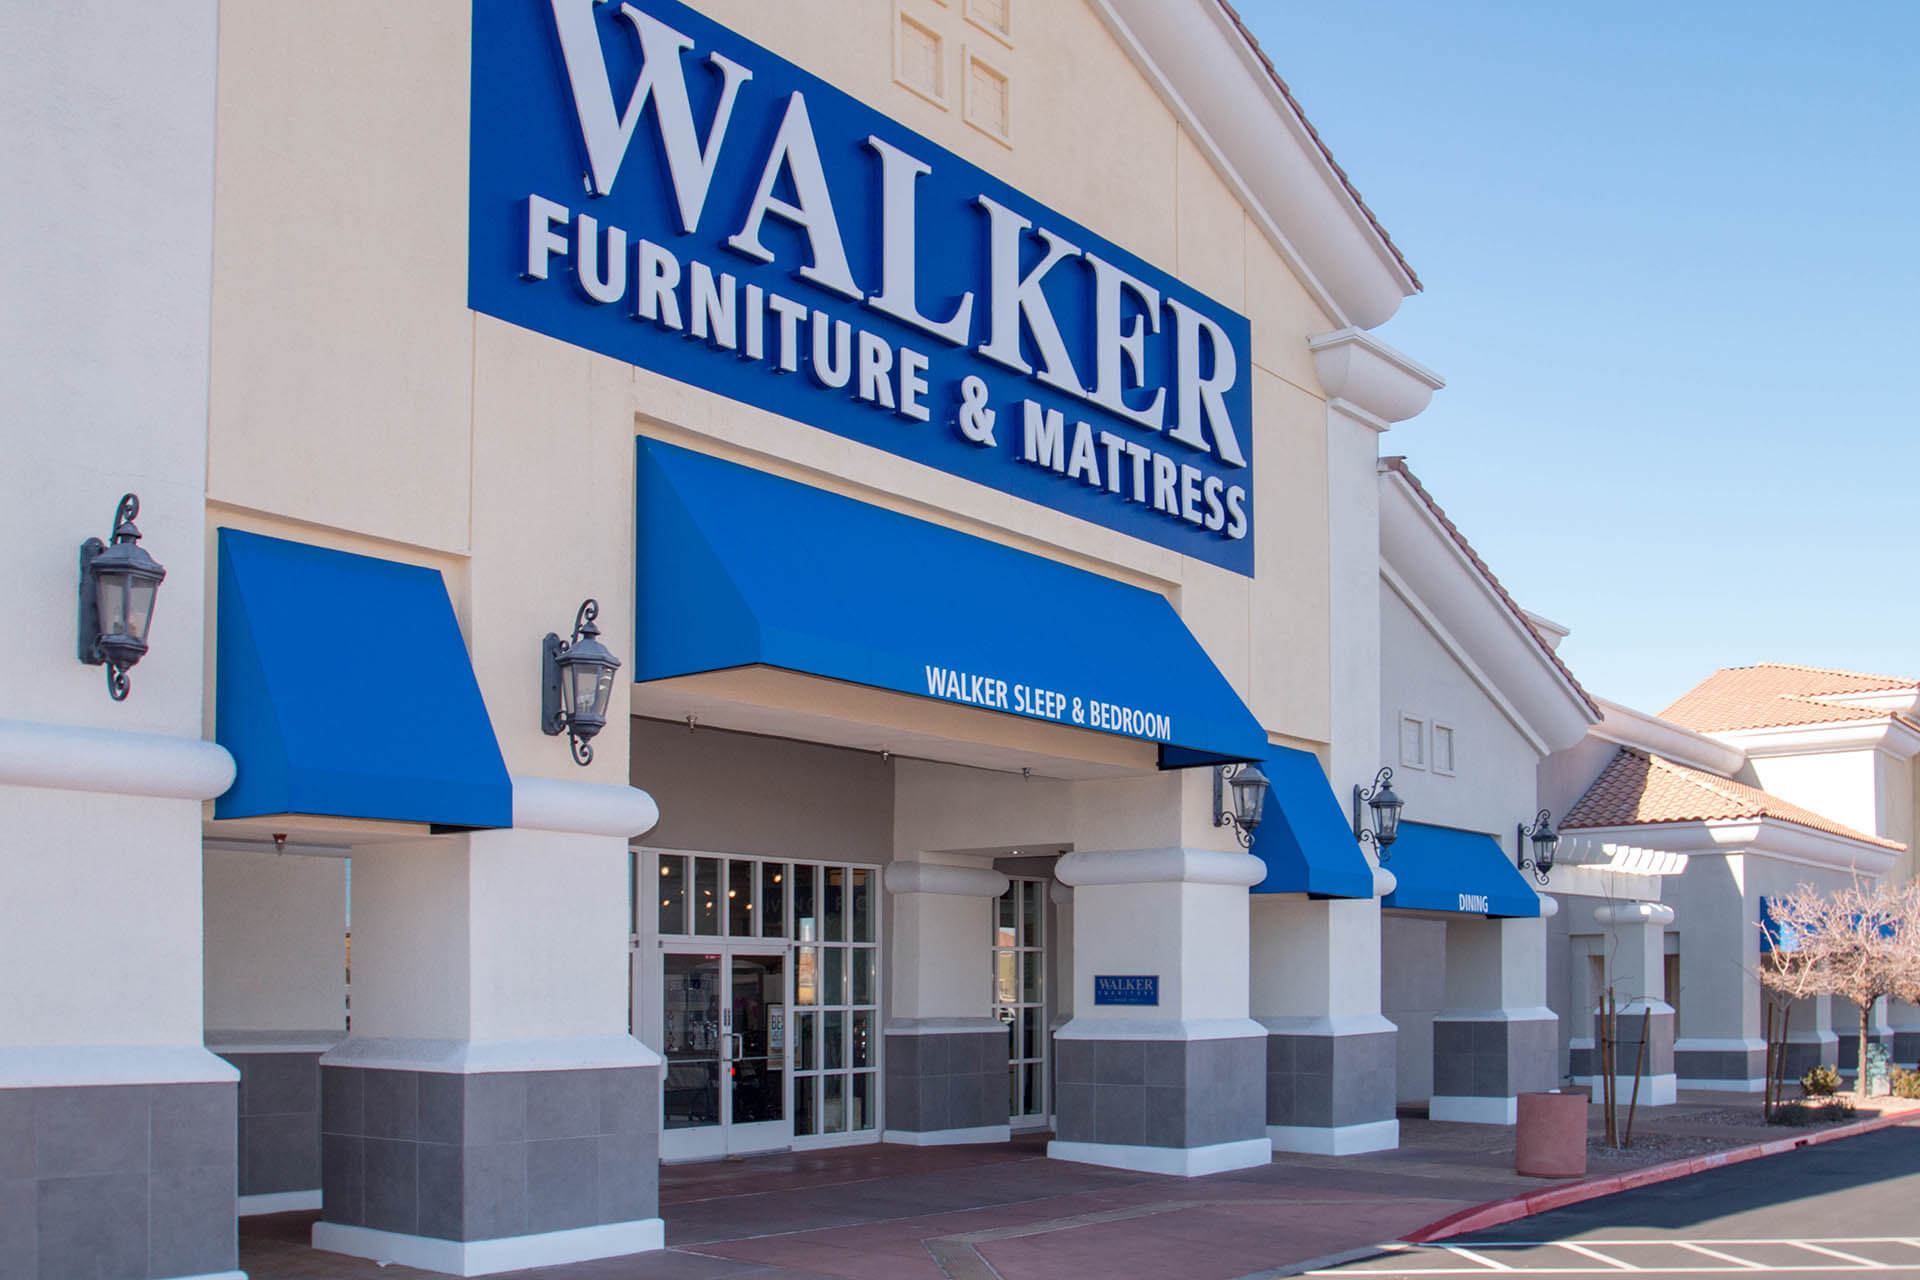 walker furniture & mattress photos